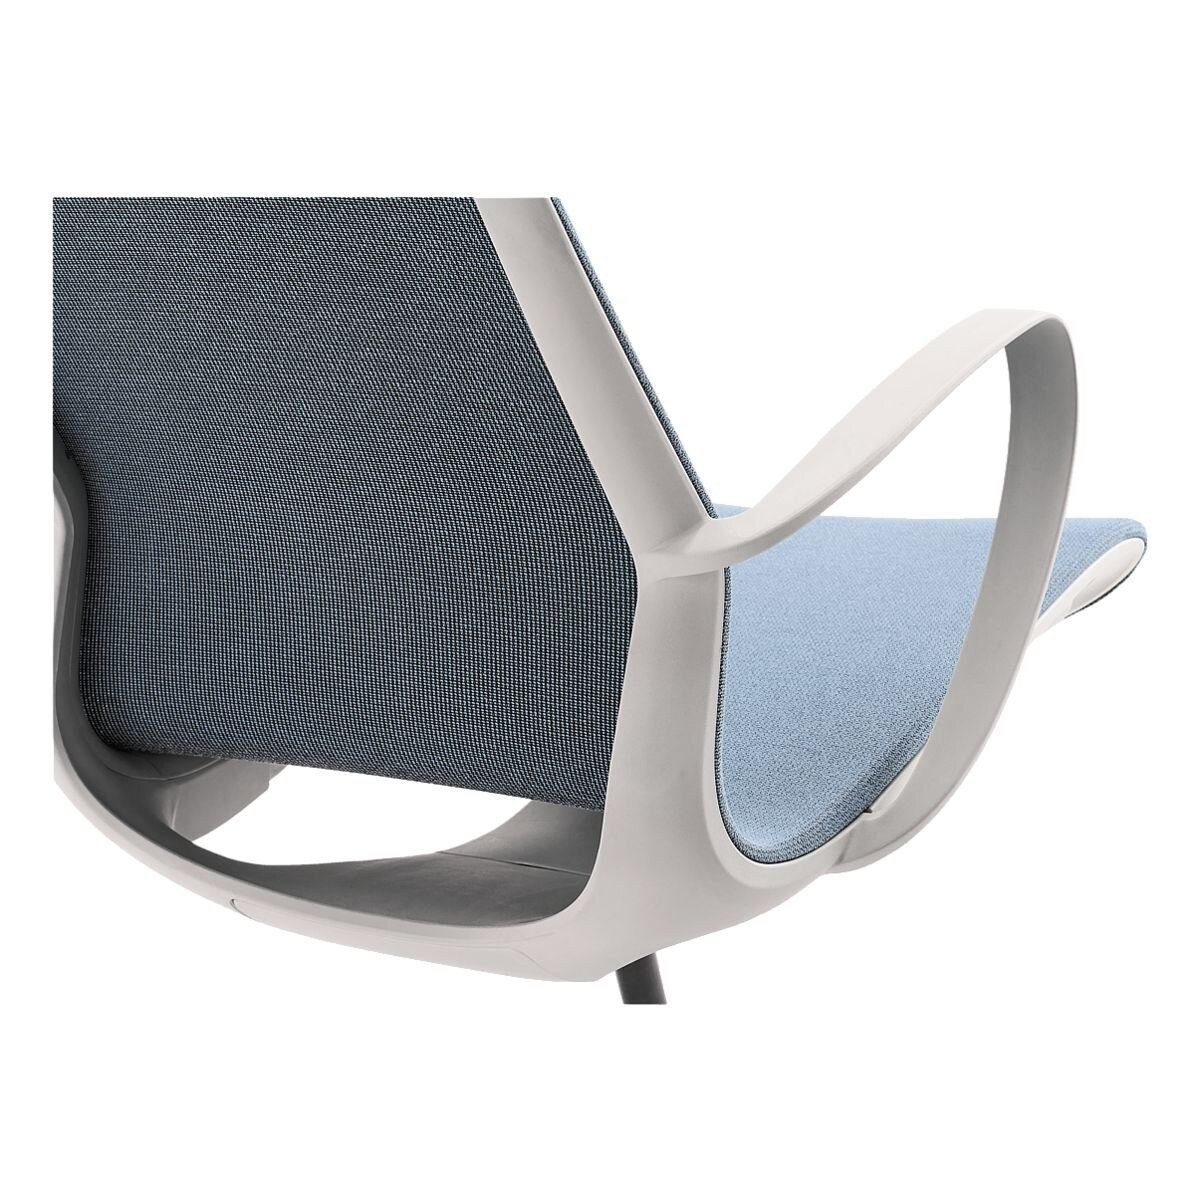 myMORRIS, und Flachsitz Schreibtischstuhl Sitzmöbel Wippmechanik Mayer mit Armlehnen, blau